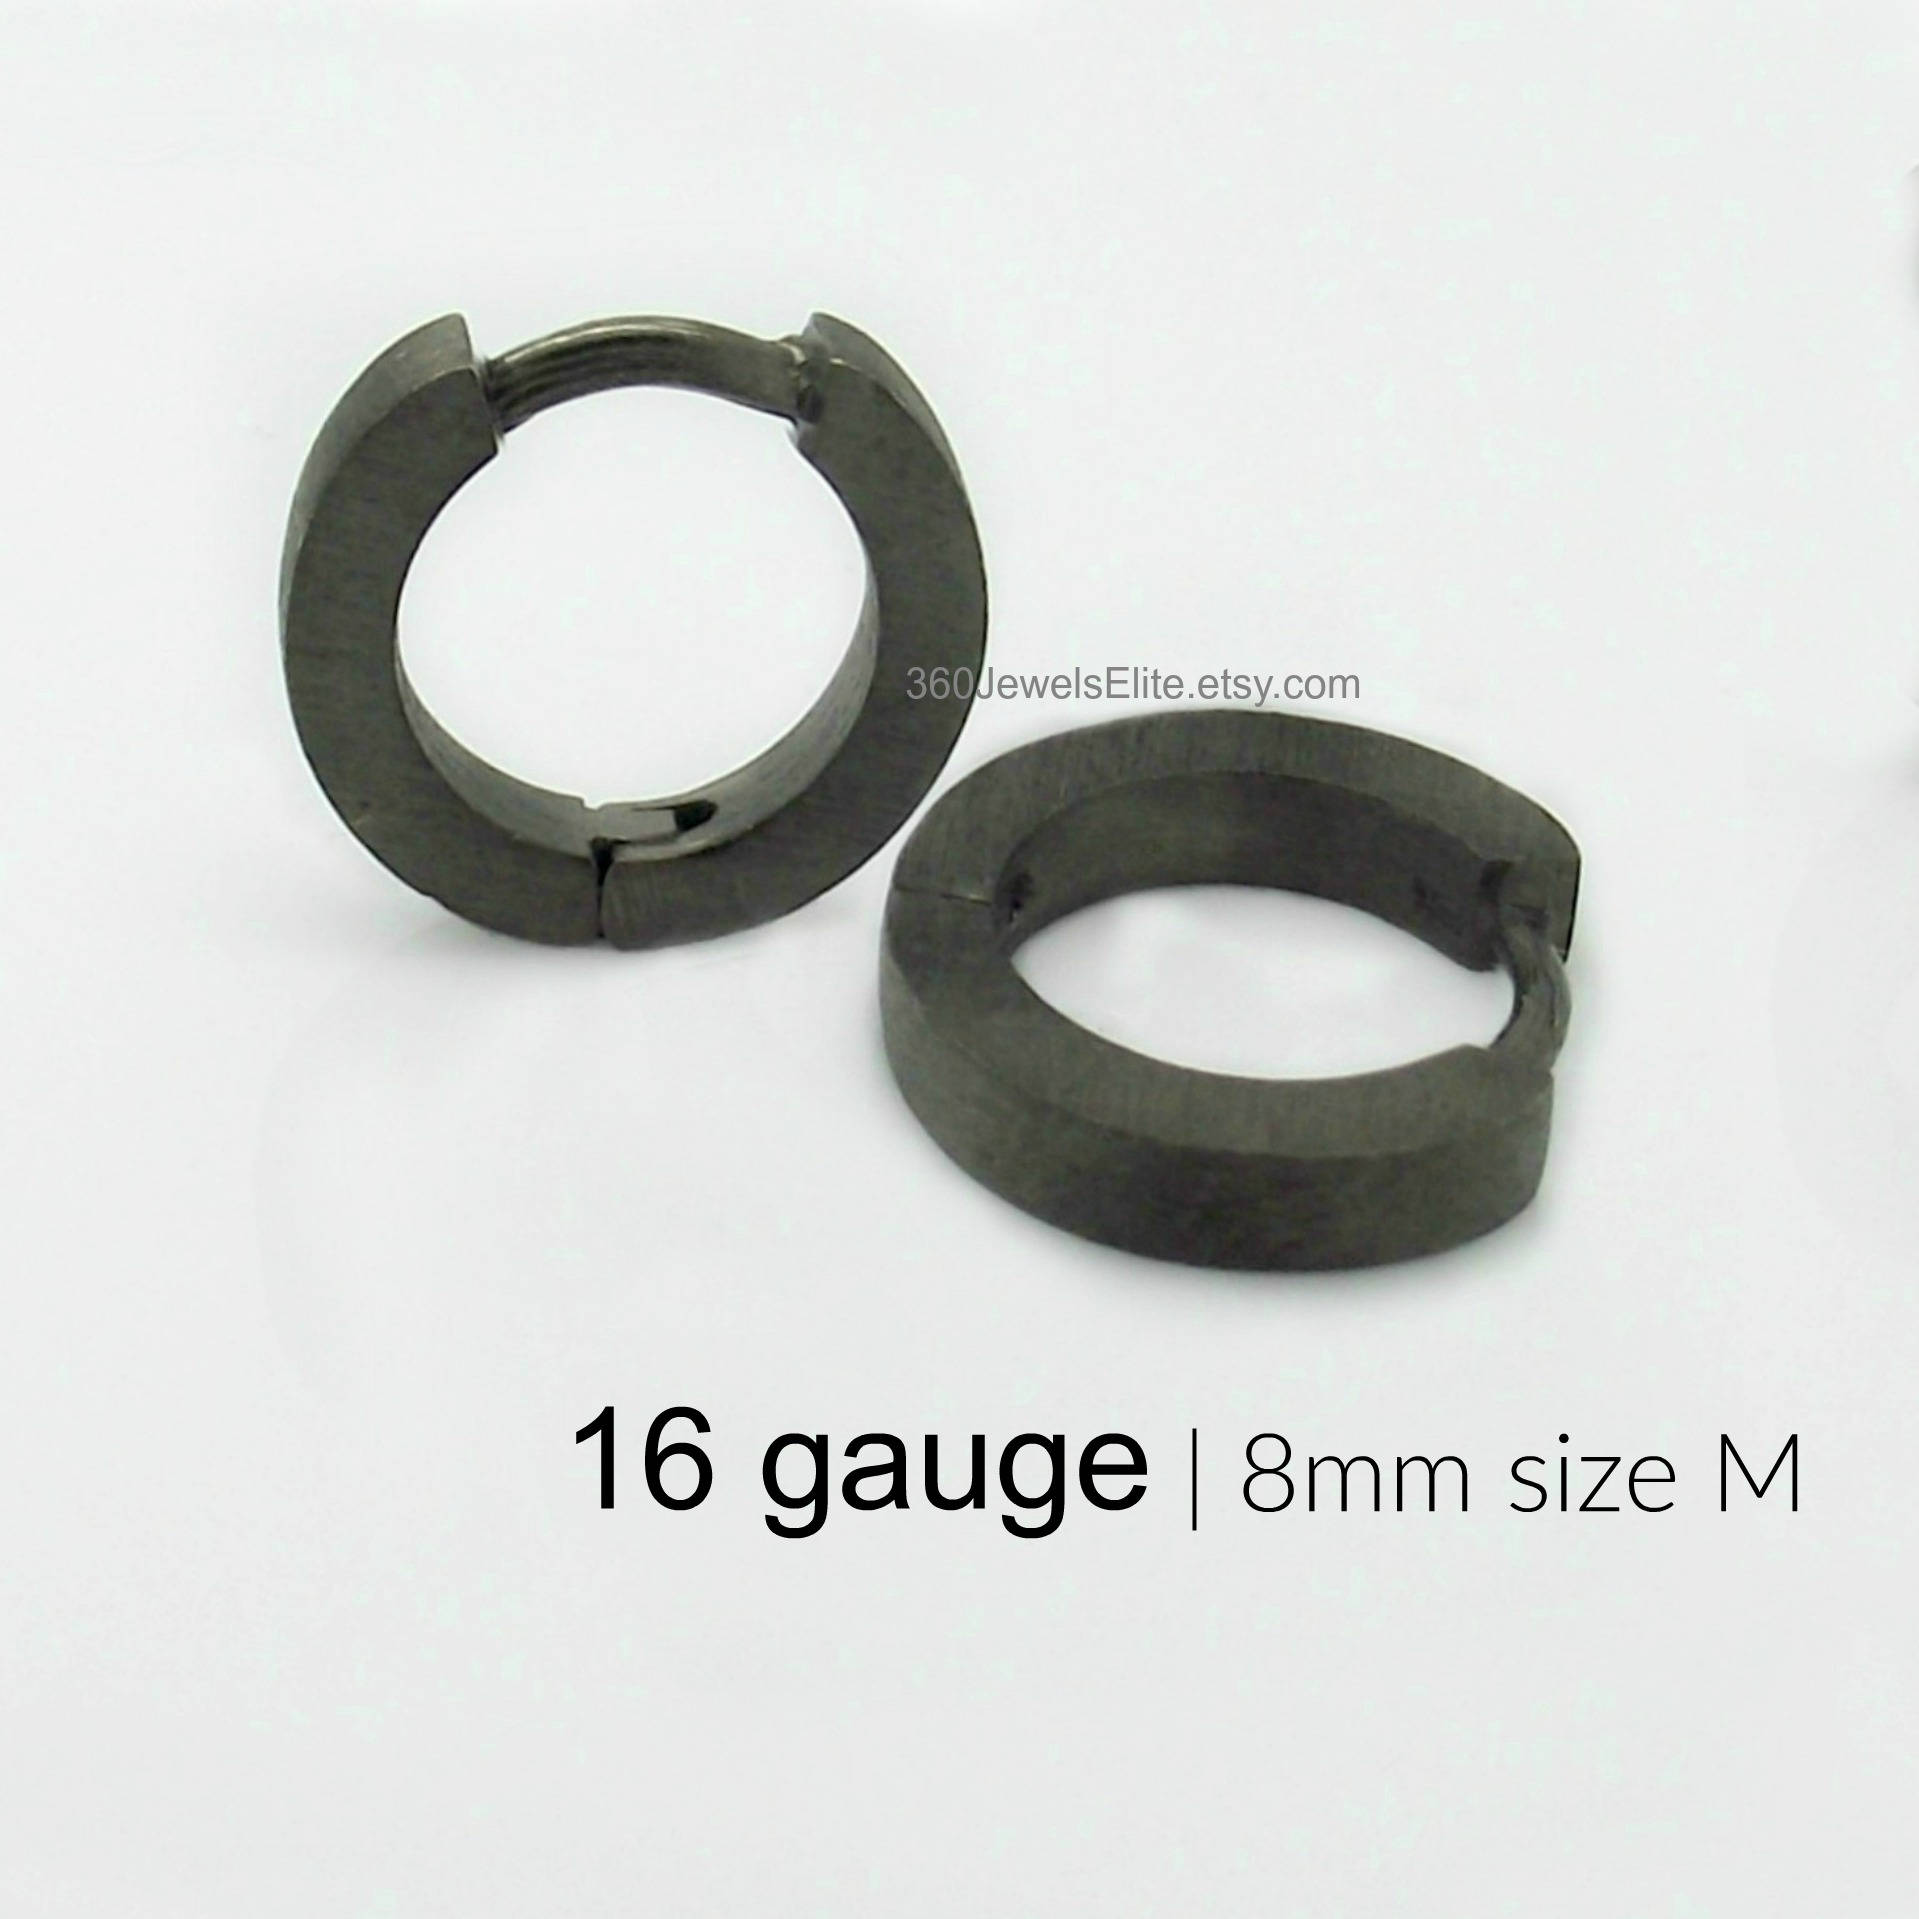 16 gauge hoop earrings 16 gauge cartilage earrings charcoal | Etsy